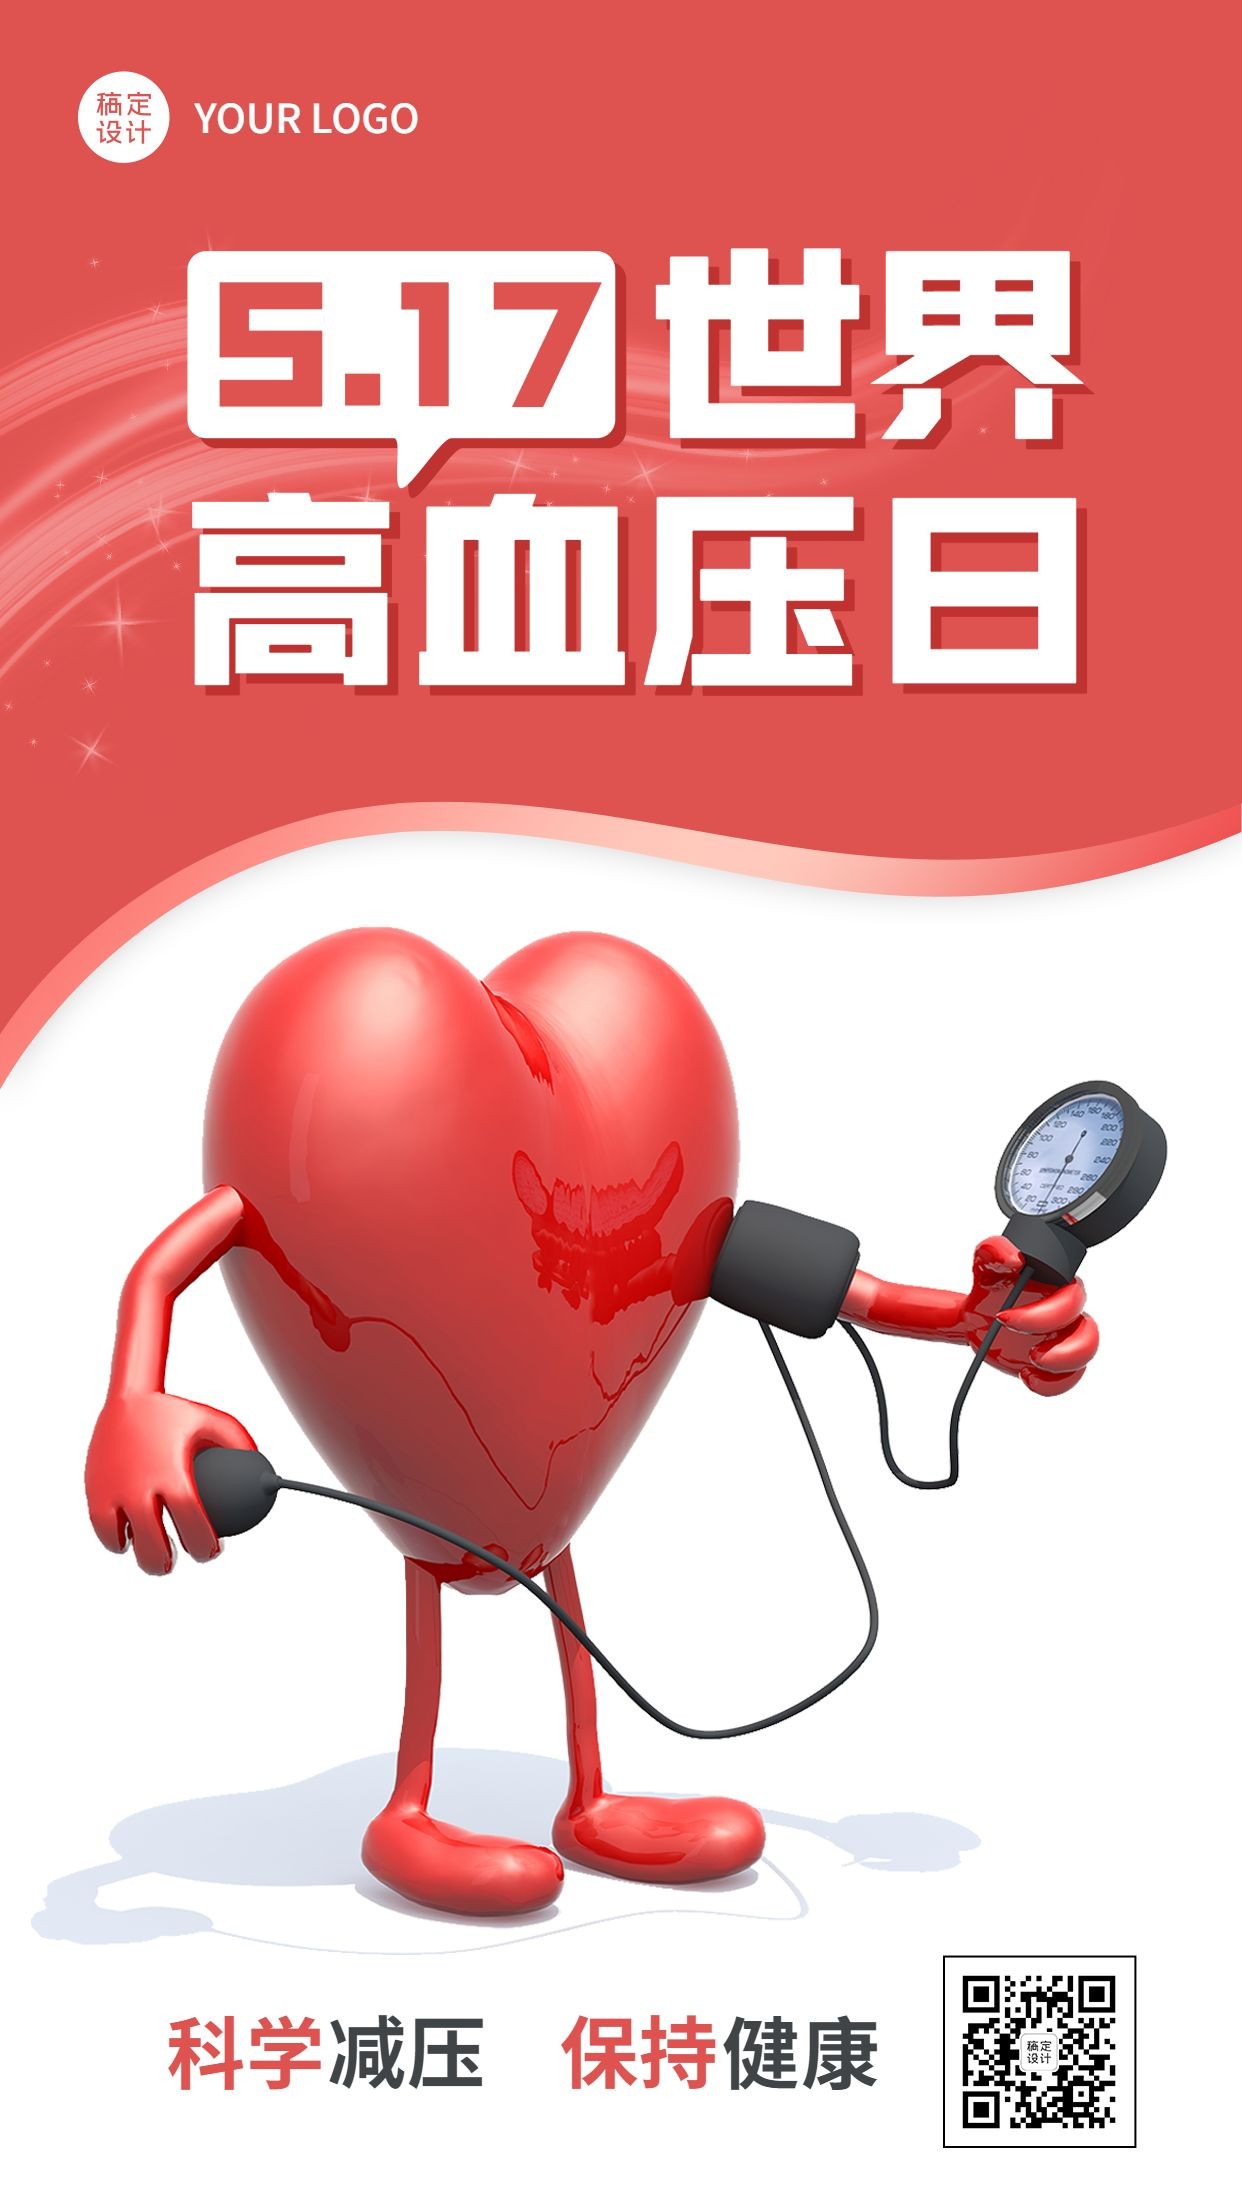 世界高血压日节日宣传手机海报